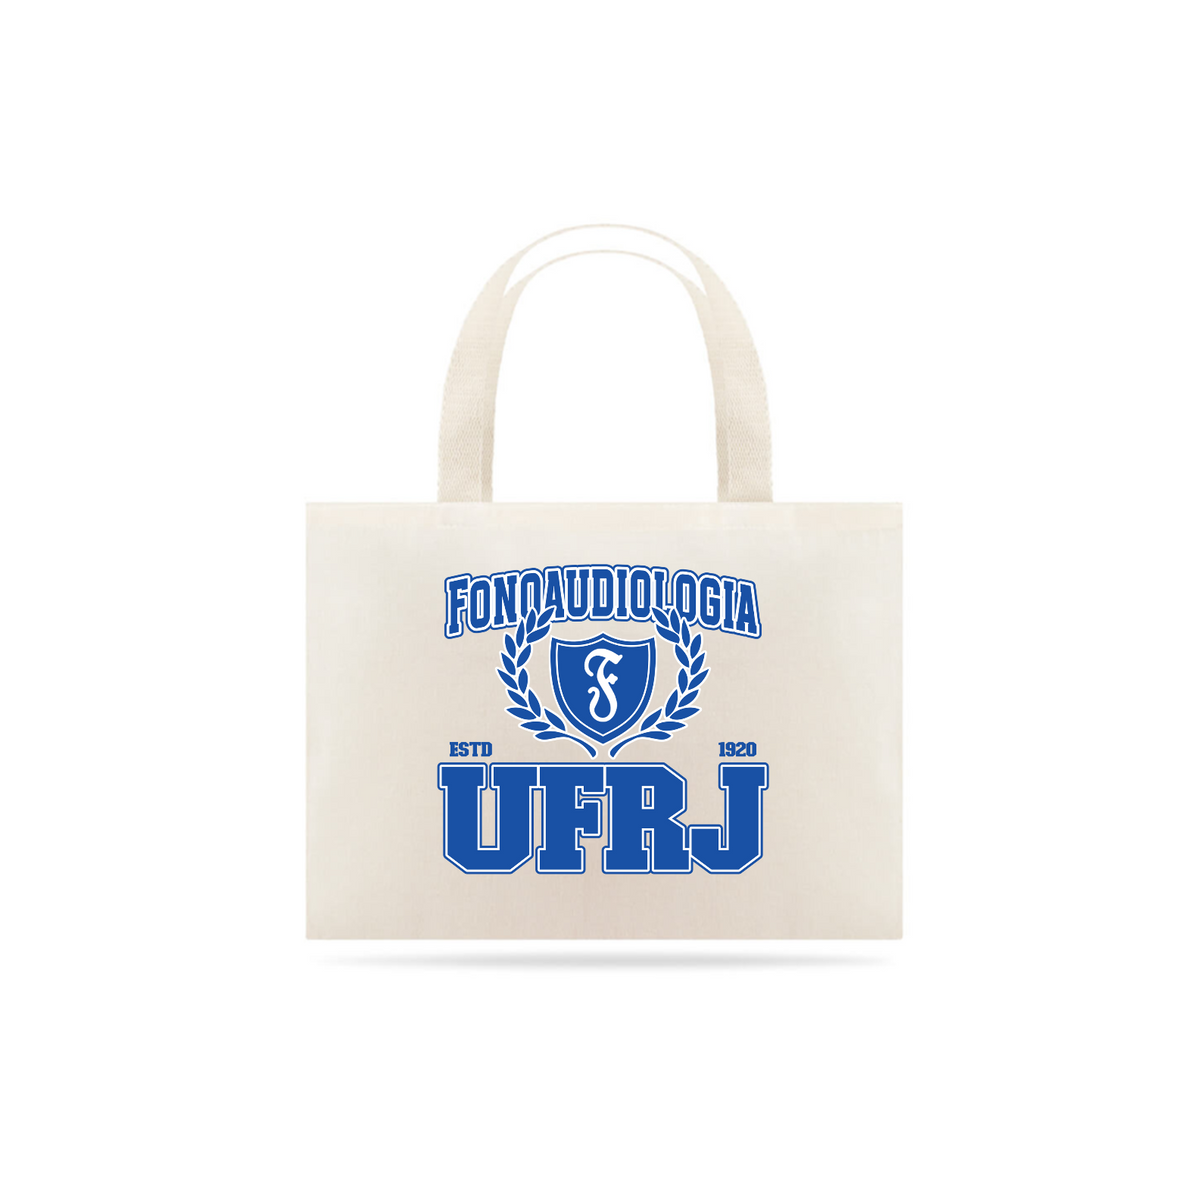 Nome do produto: UniVerso - Ecobag Fonoaudiologia UFRJ 